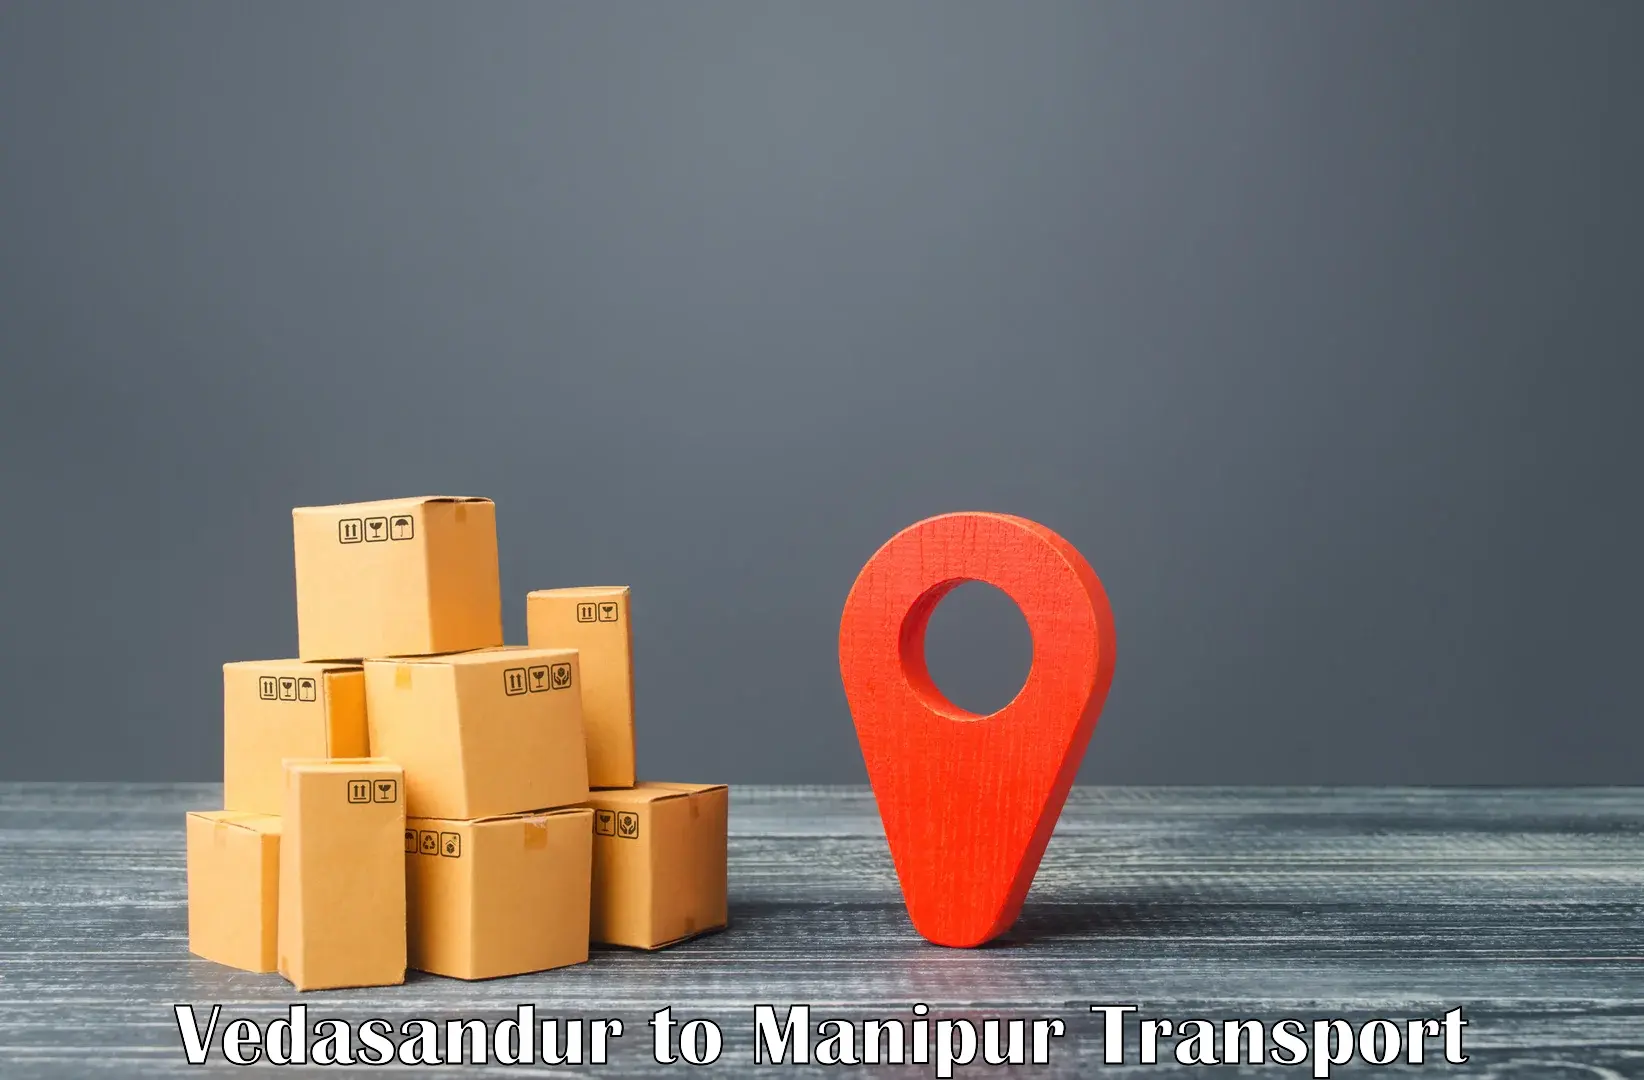 Nearest transport service Vedasandur to Manipur